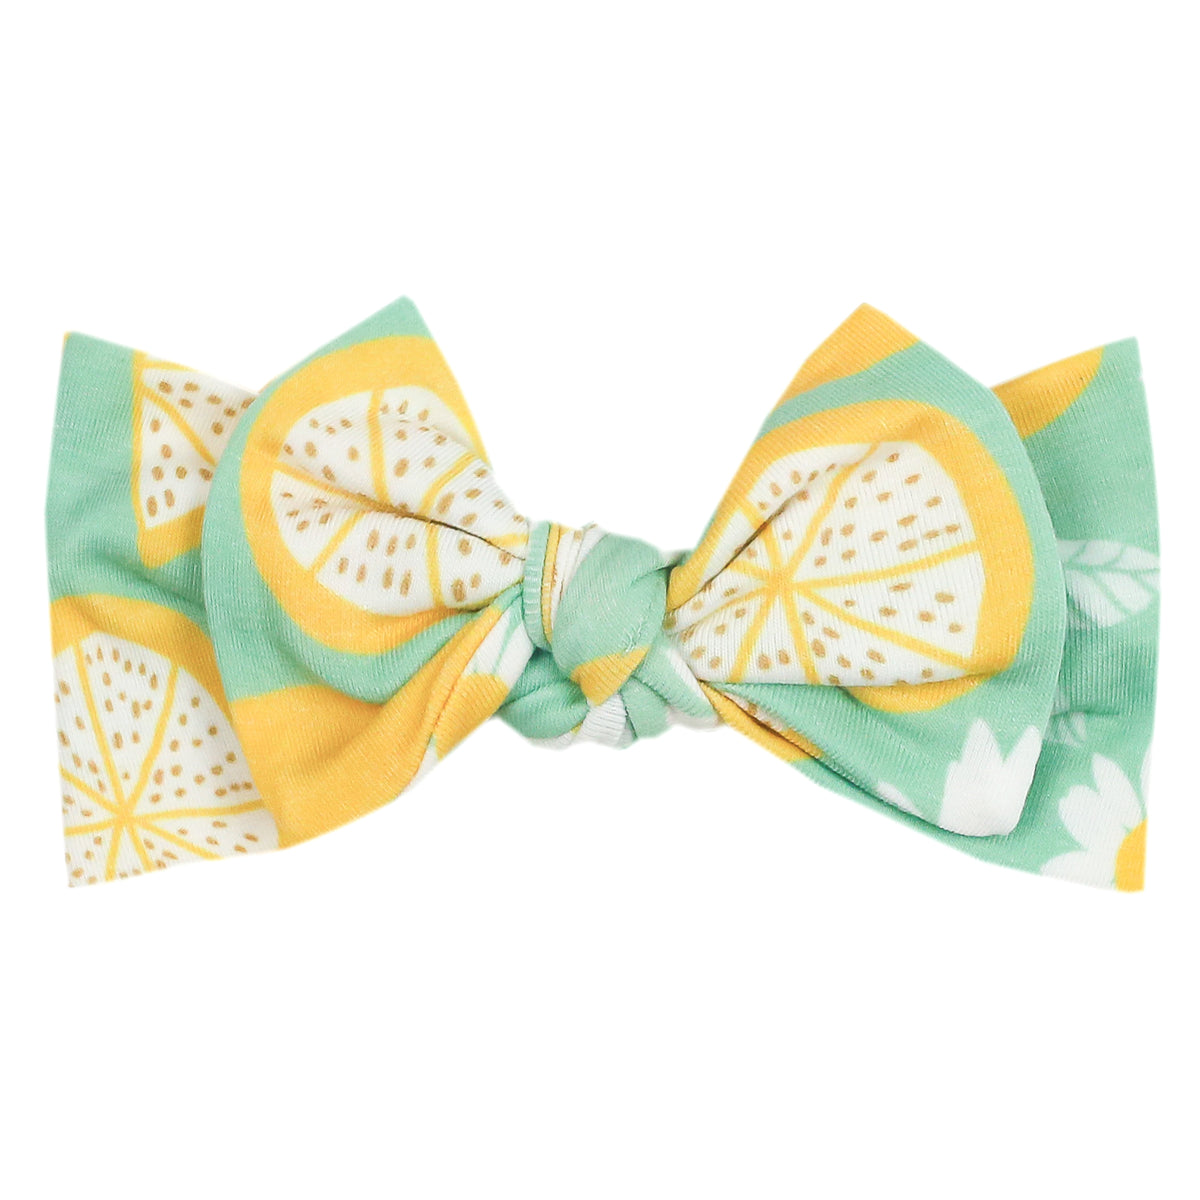 Knit Headband Bow - Lemon